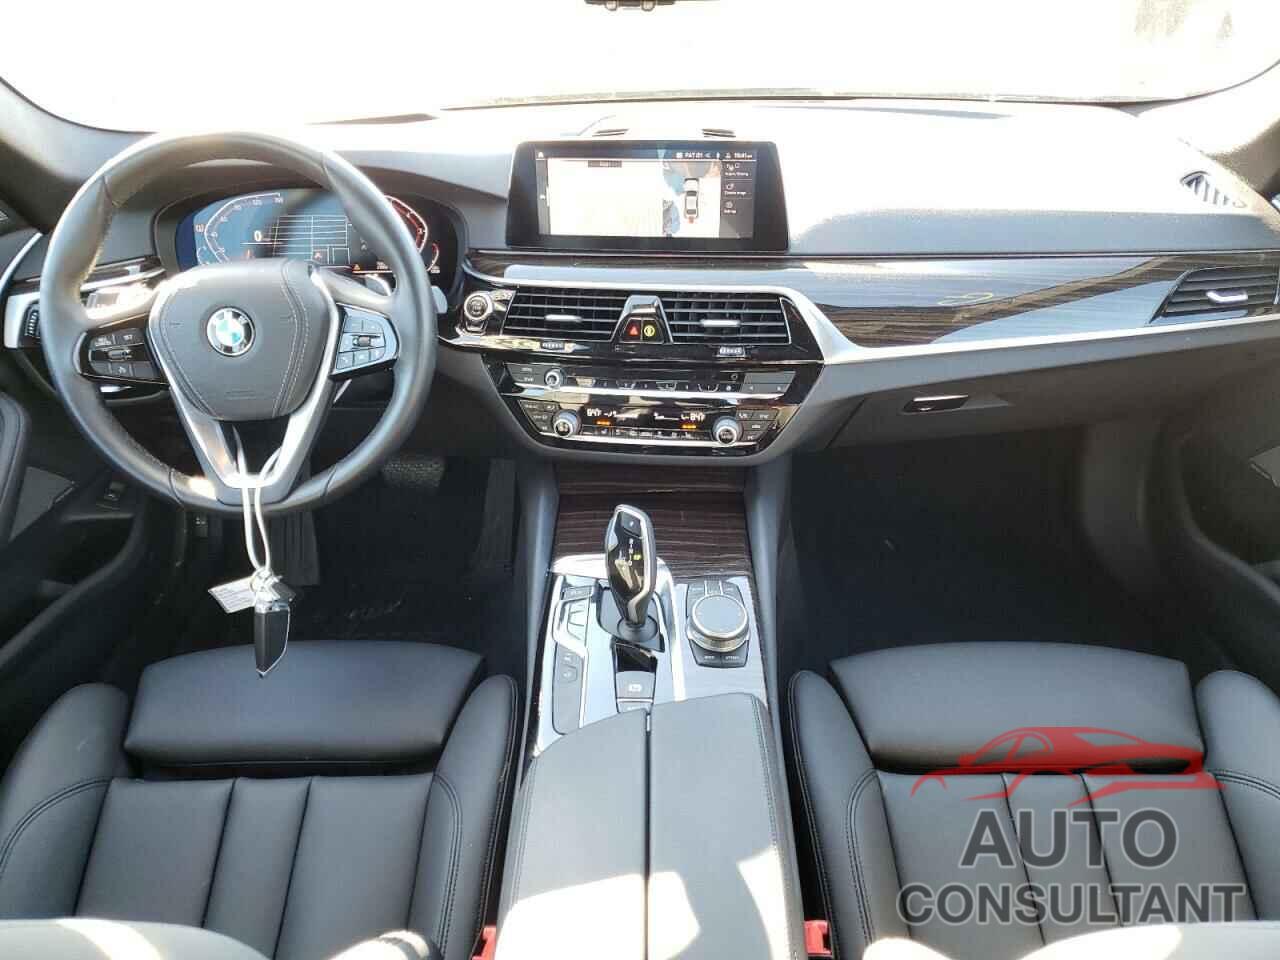 BMW 5 SERIES 2020 - WBAJR3C03LCD67484